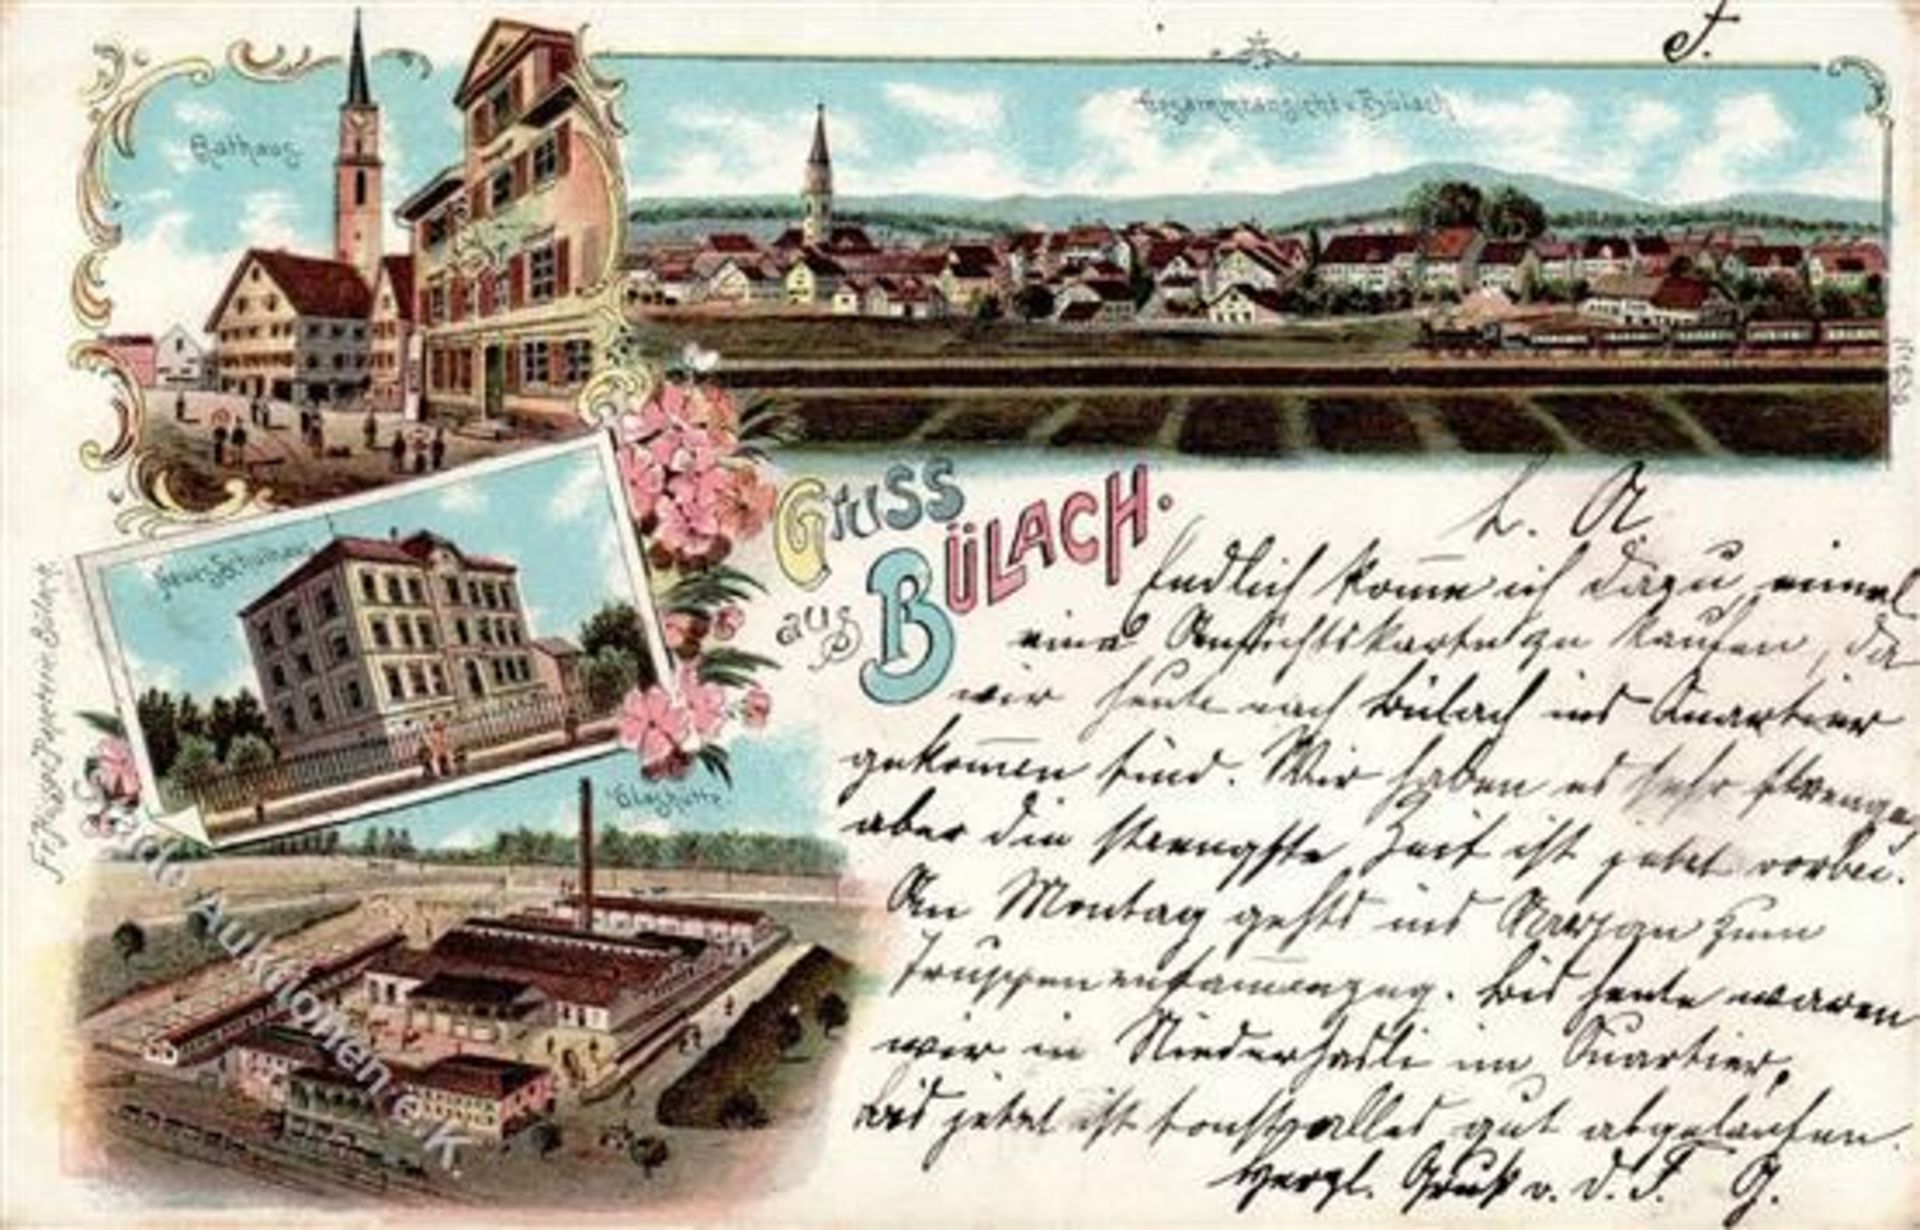 Bülach (8180) Schweiz Glasfabrik Rathaus Eisenbahn Lithographie 1898 I-Dieses Los wird in einer